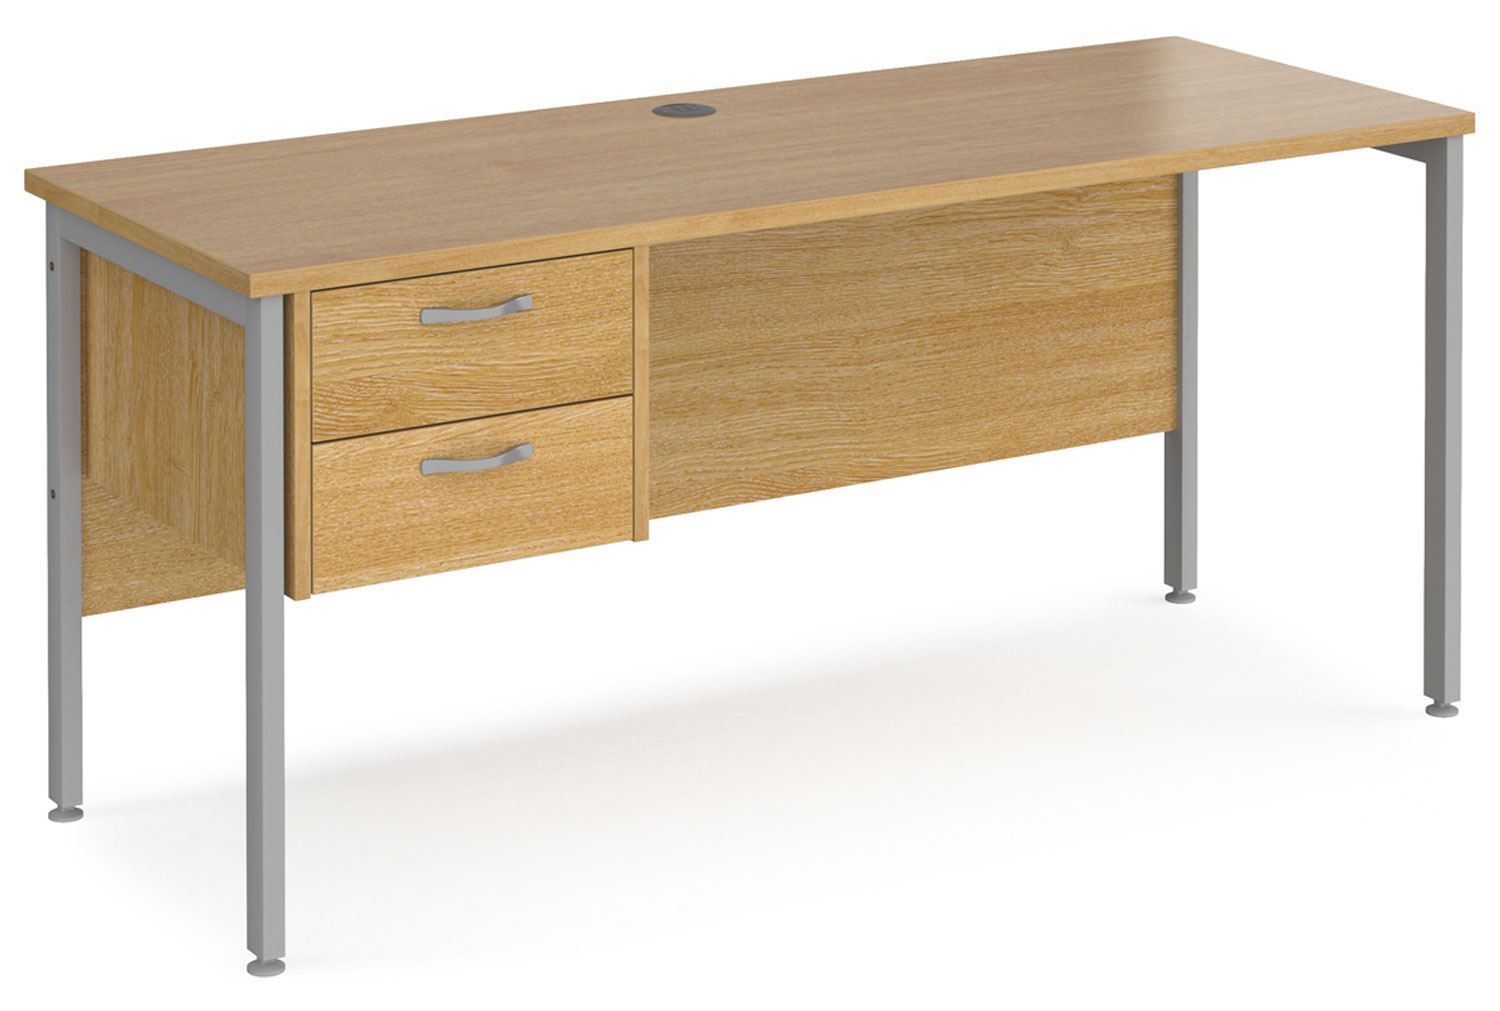 Value Line Deluxe H-Leg Narrow Rectangular Office Desk 2 Drawers (Silver Legs), 160w60dx73h (cm), Oak